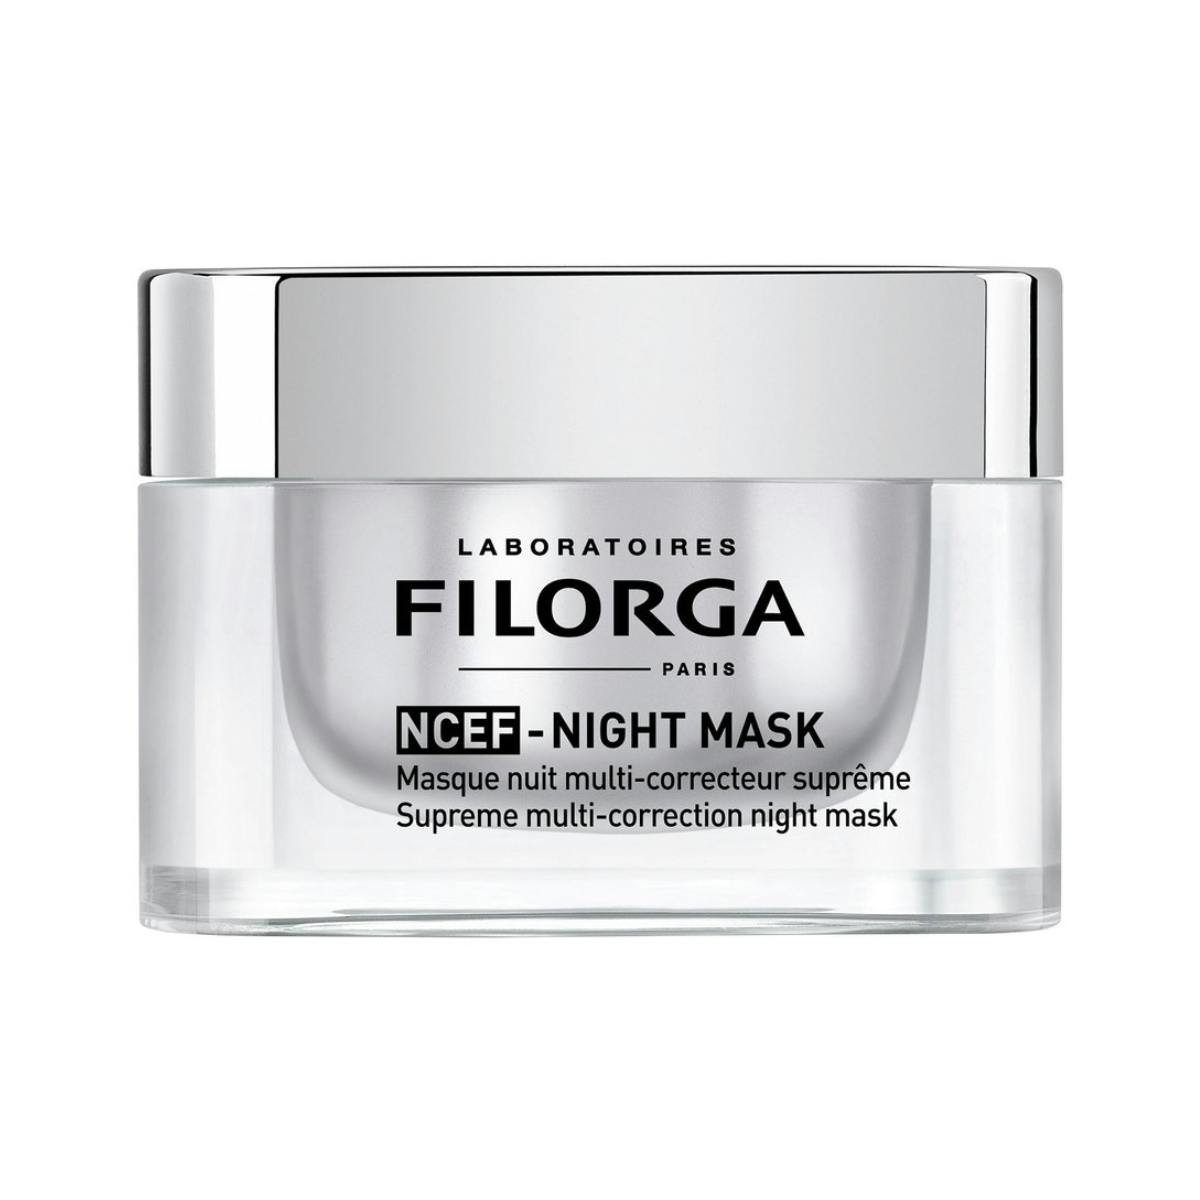 Bedste natmaske til moden hud: NCEF Night Mask – Filorga